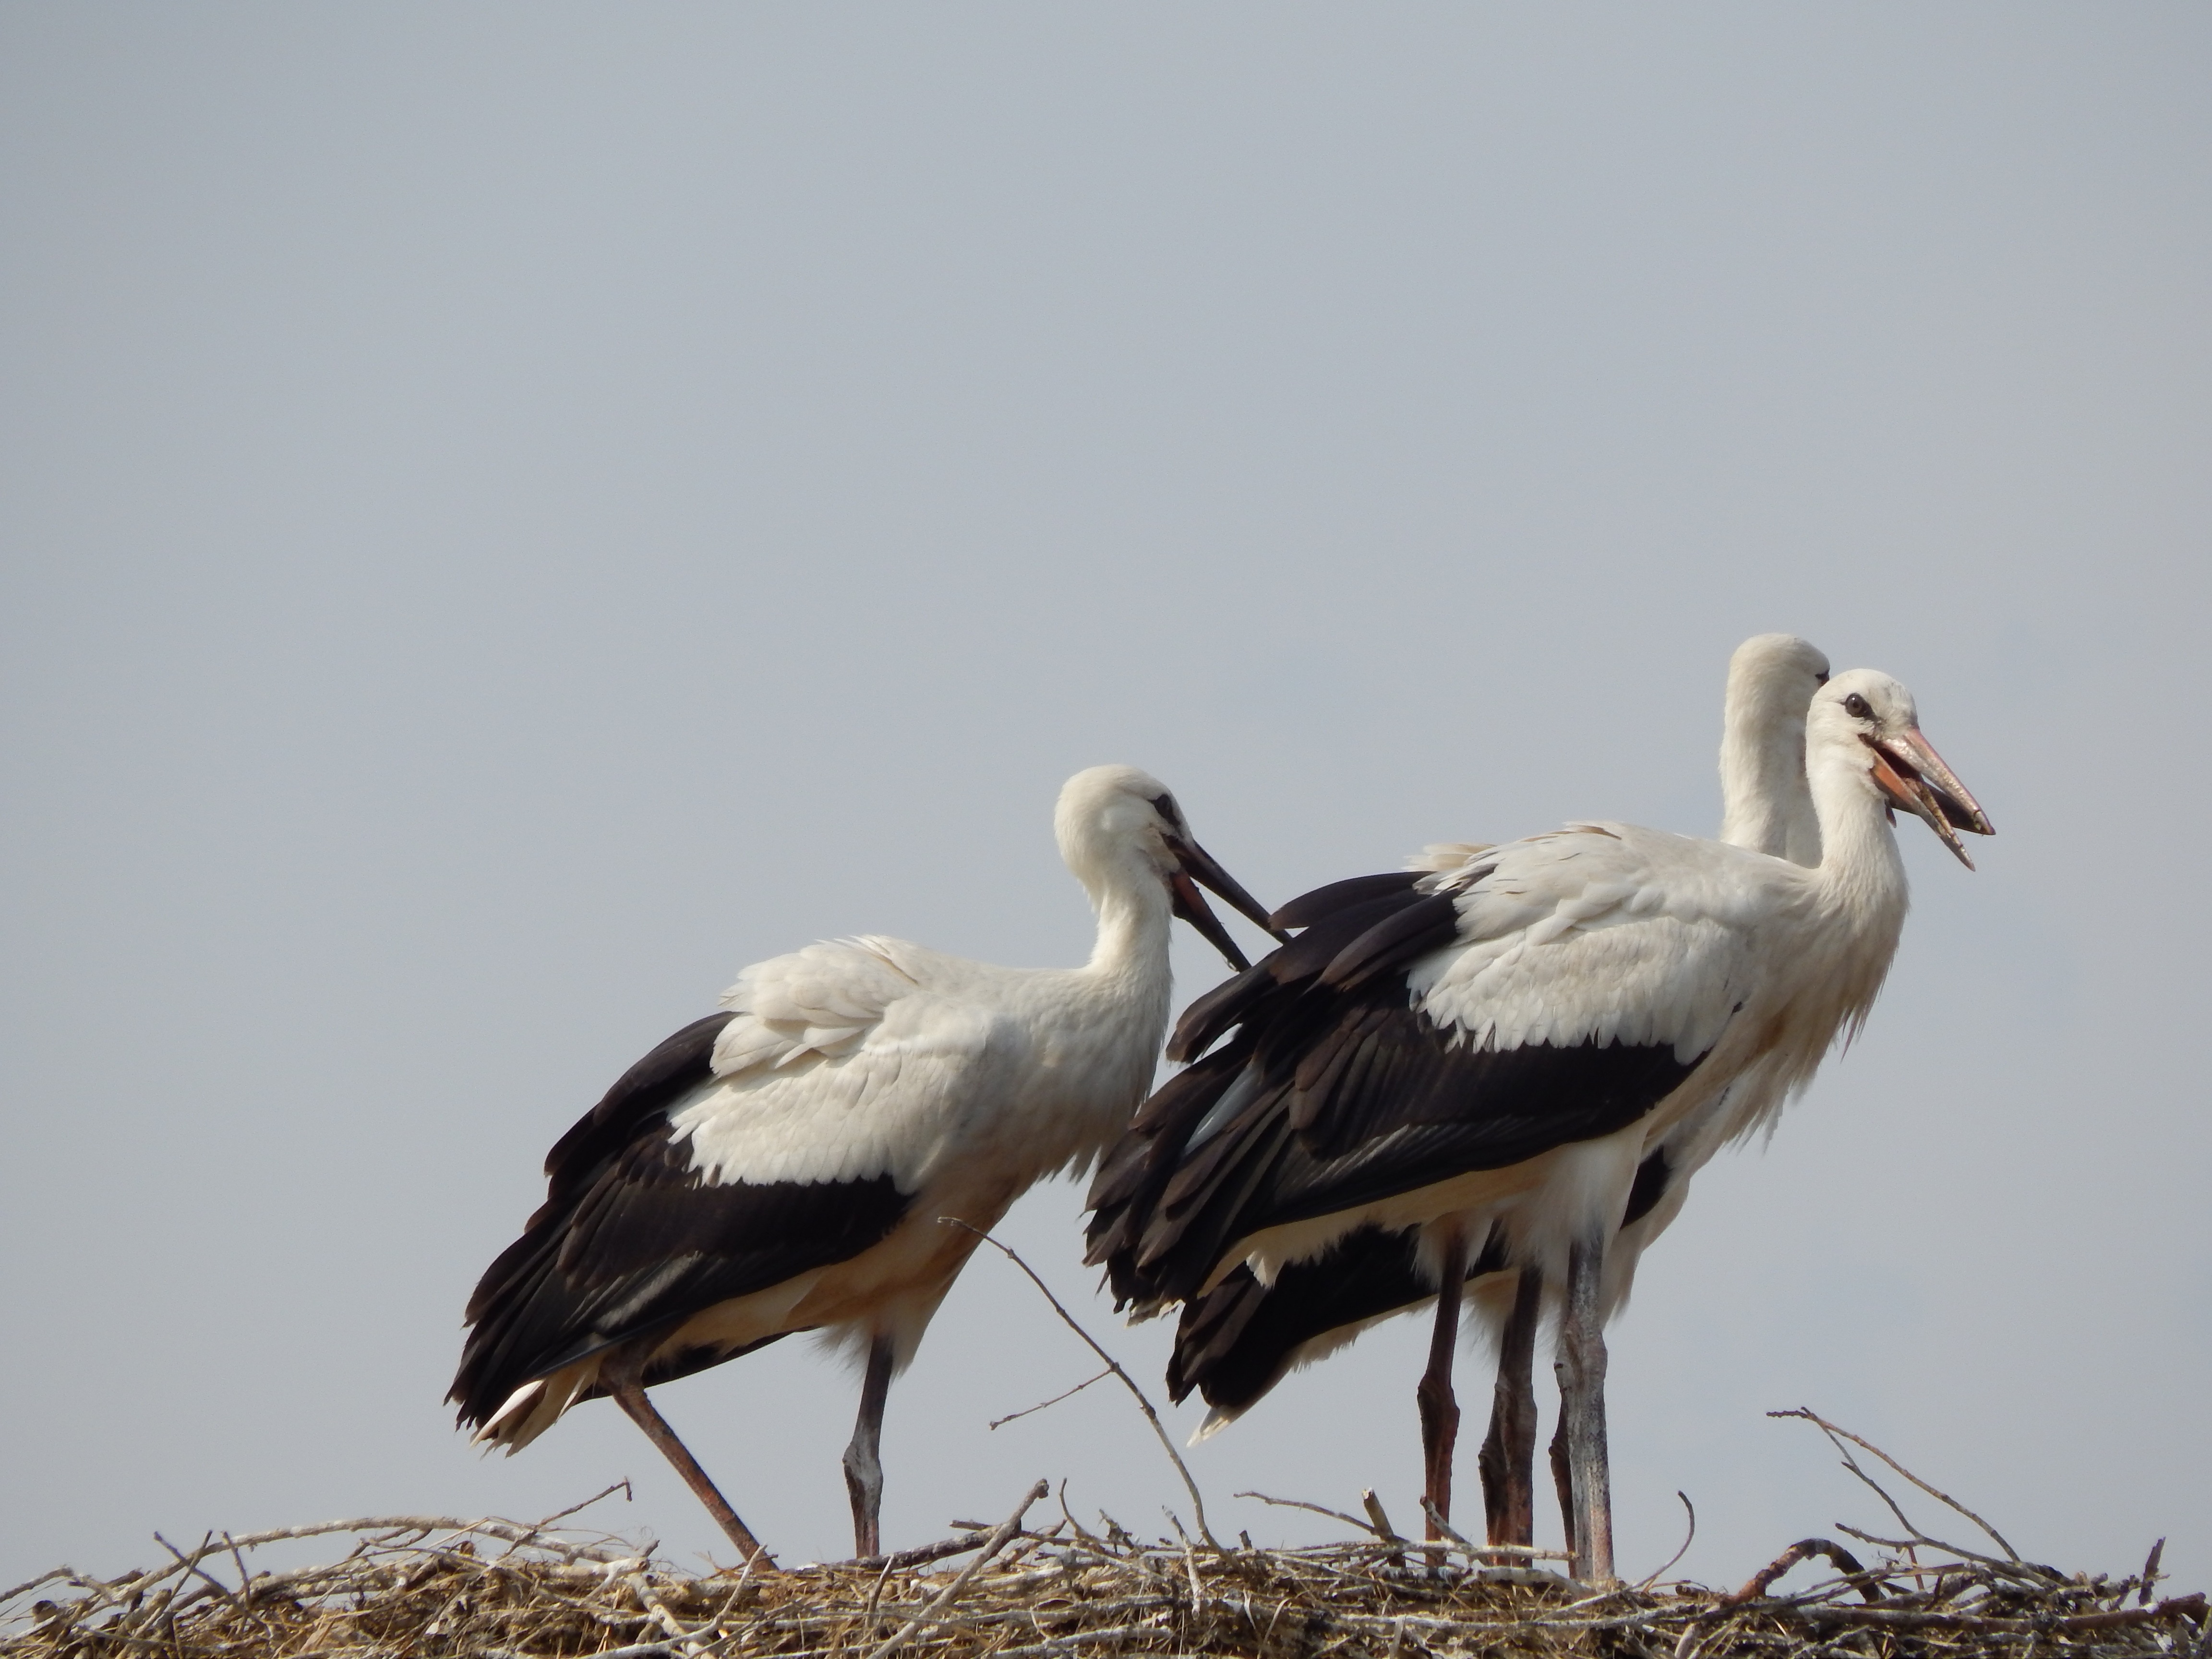 3 white storks